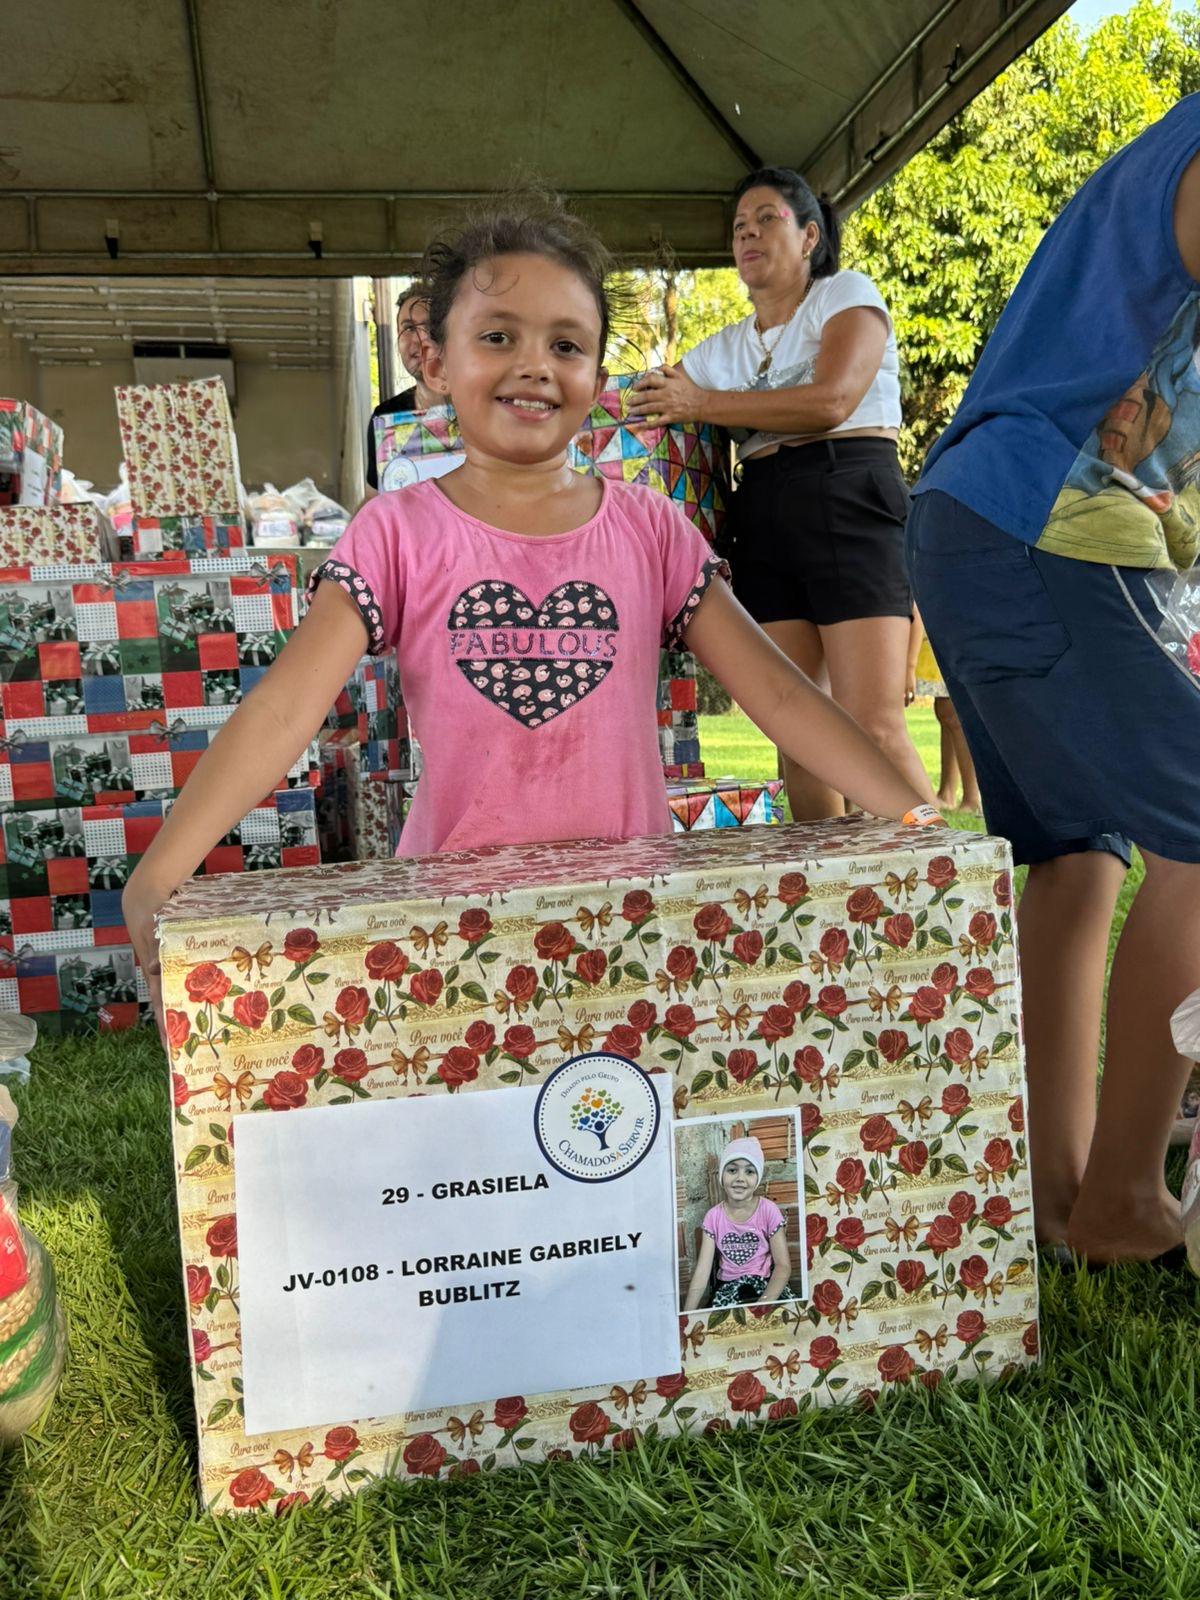 EM DOURADOS: ‘Chamados a Servir’ distribui caixas  com presentes e alimentos na periferia